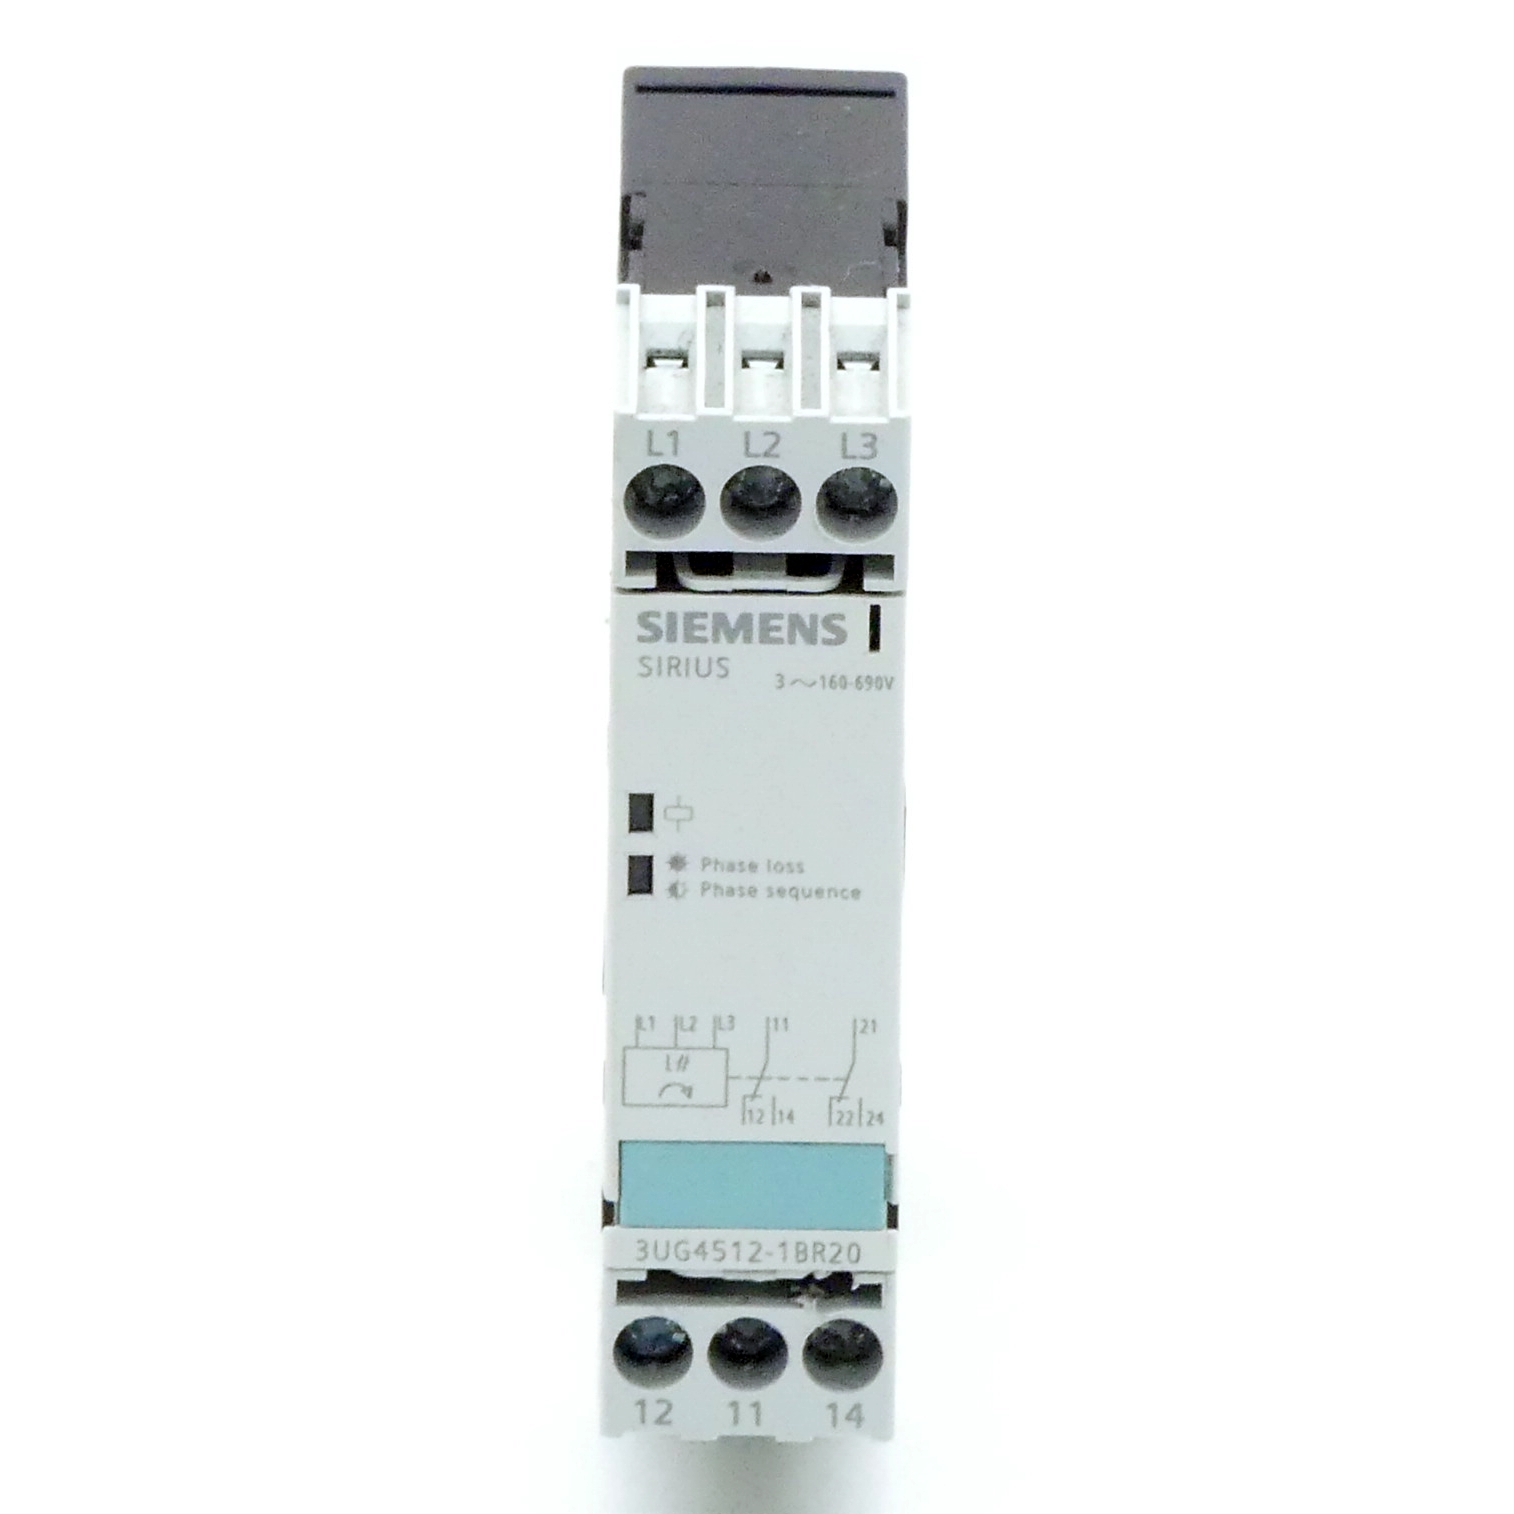 Monitoring relay 3UG4512-1BR20 